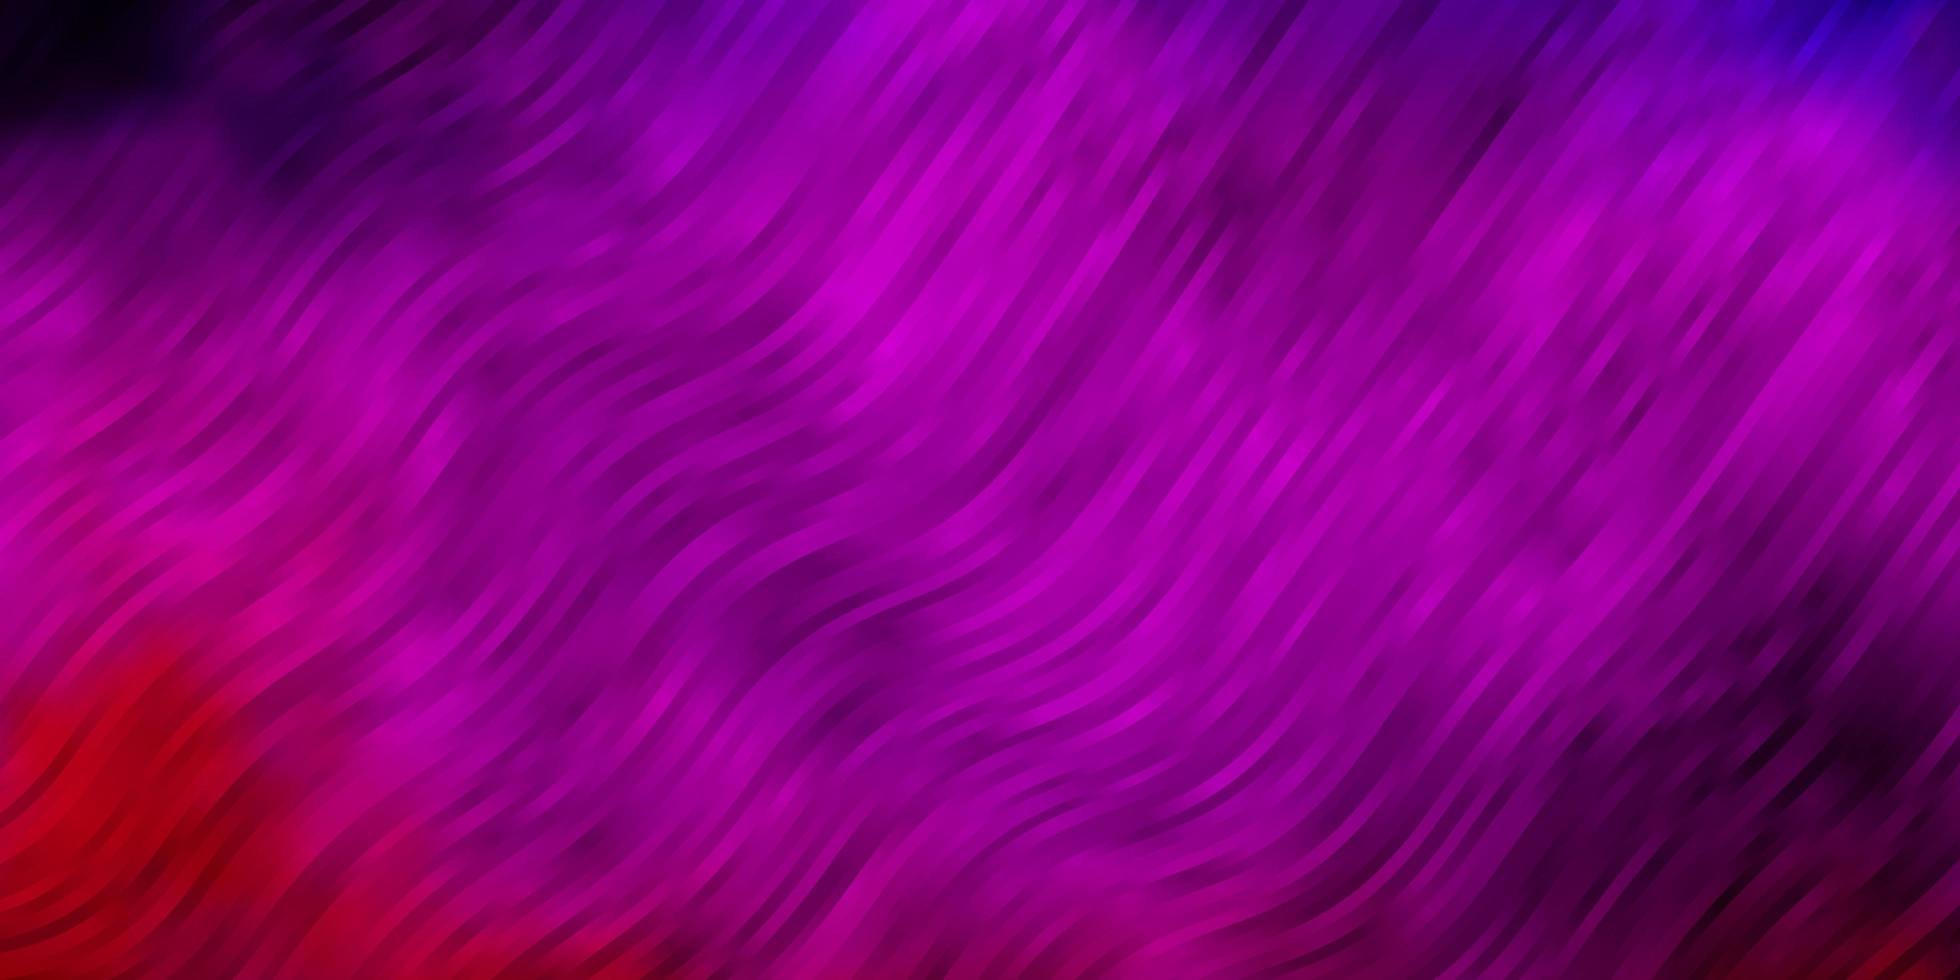 patrón de vector púrpura claro, rosa con líneas curvas. Muestra geométrica colorida con curvas de degradado. diseño inteligente para tus promociones.